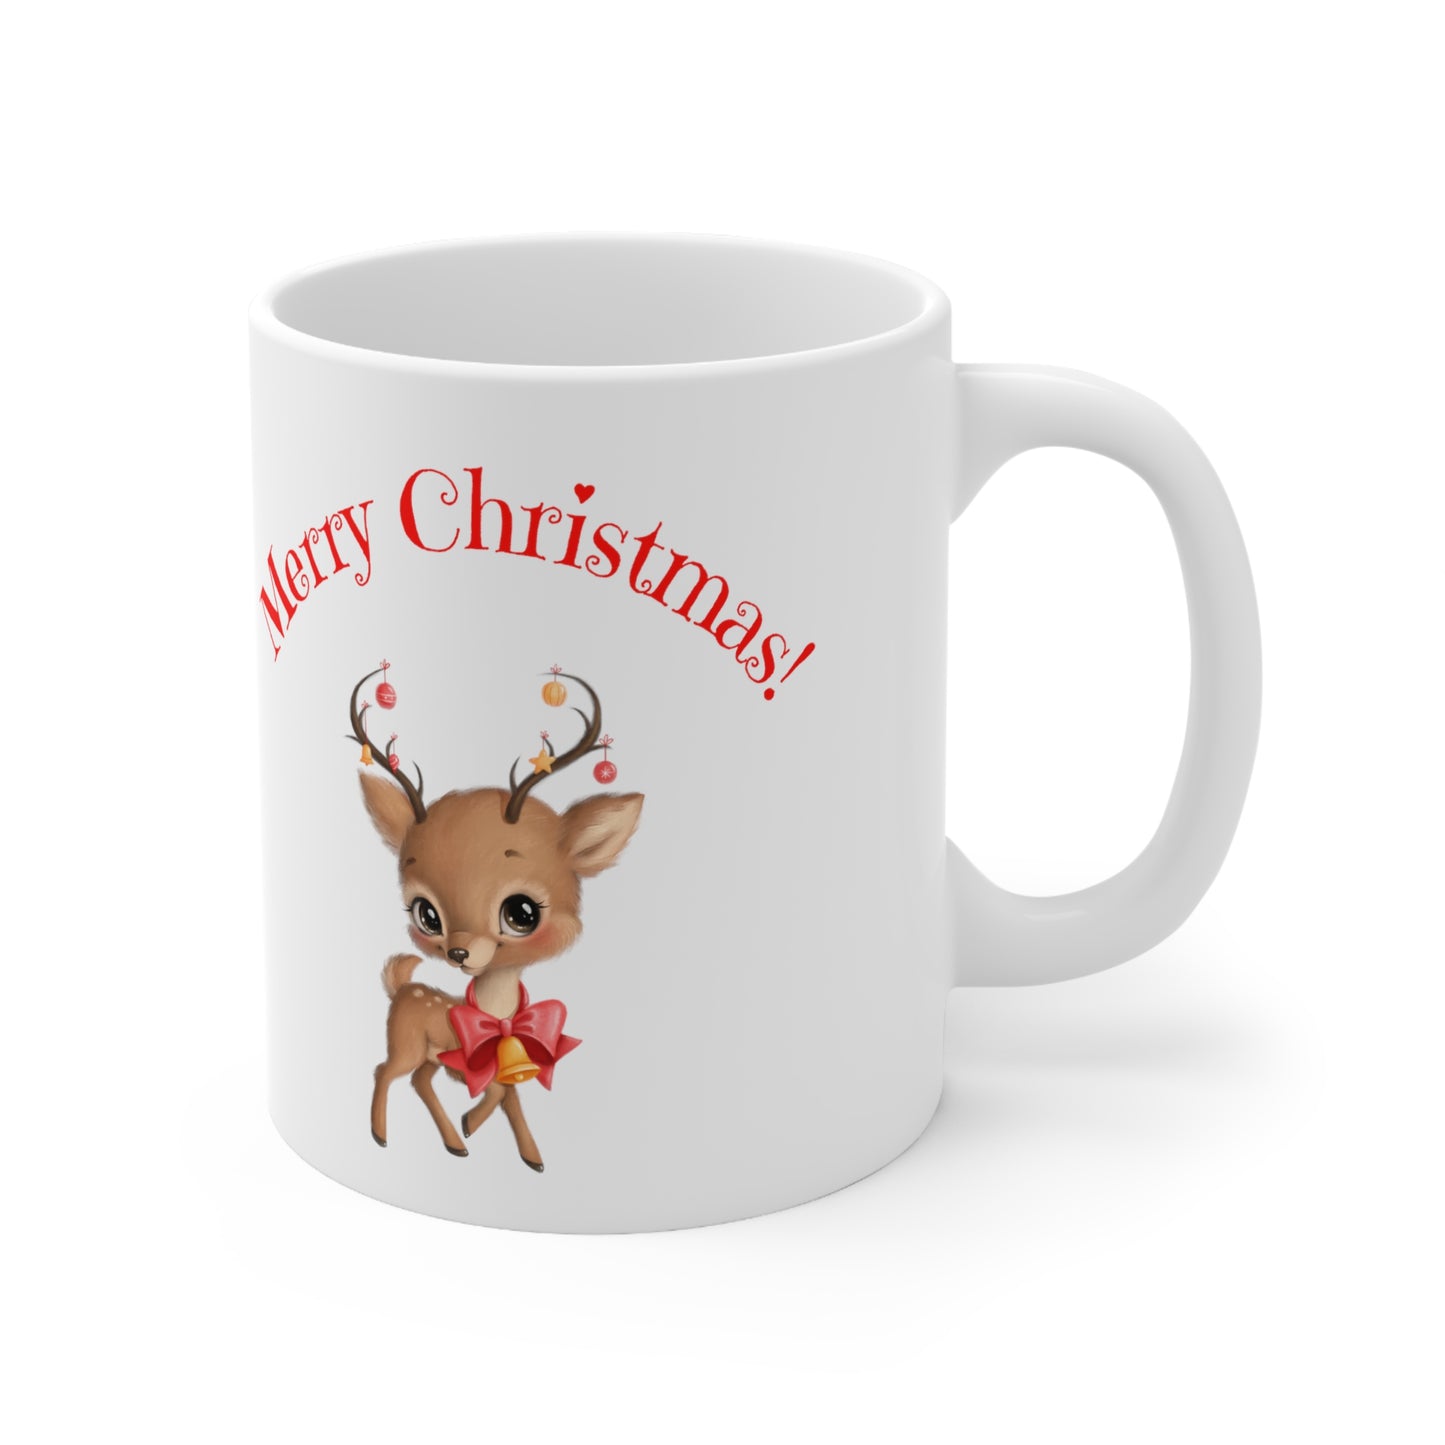 Merry Christmas Wishes Ceramic Mug, 11oz